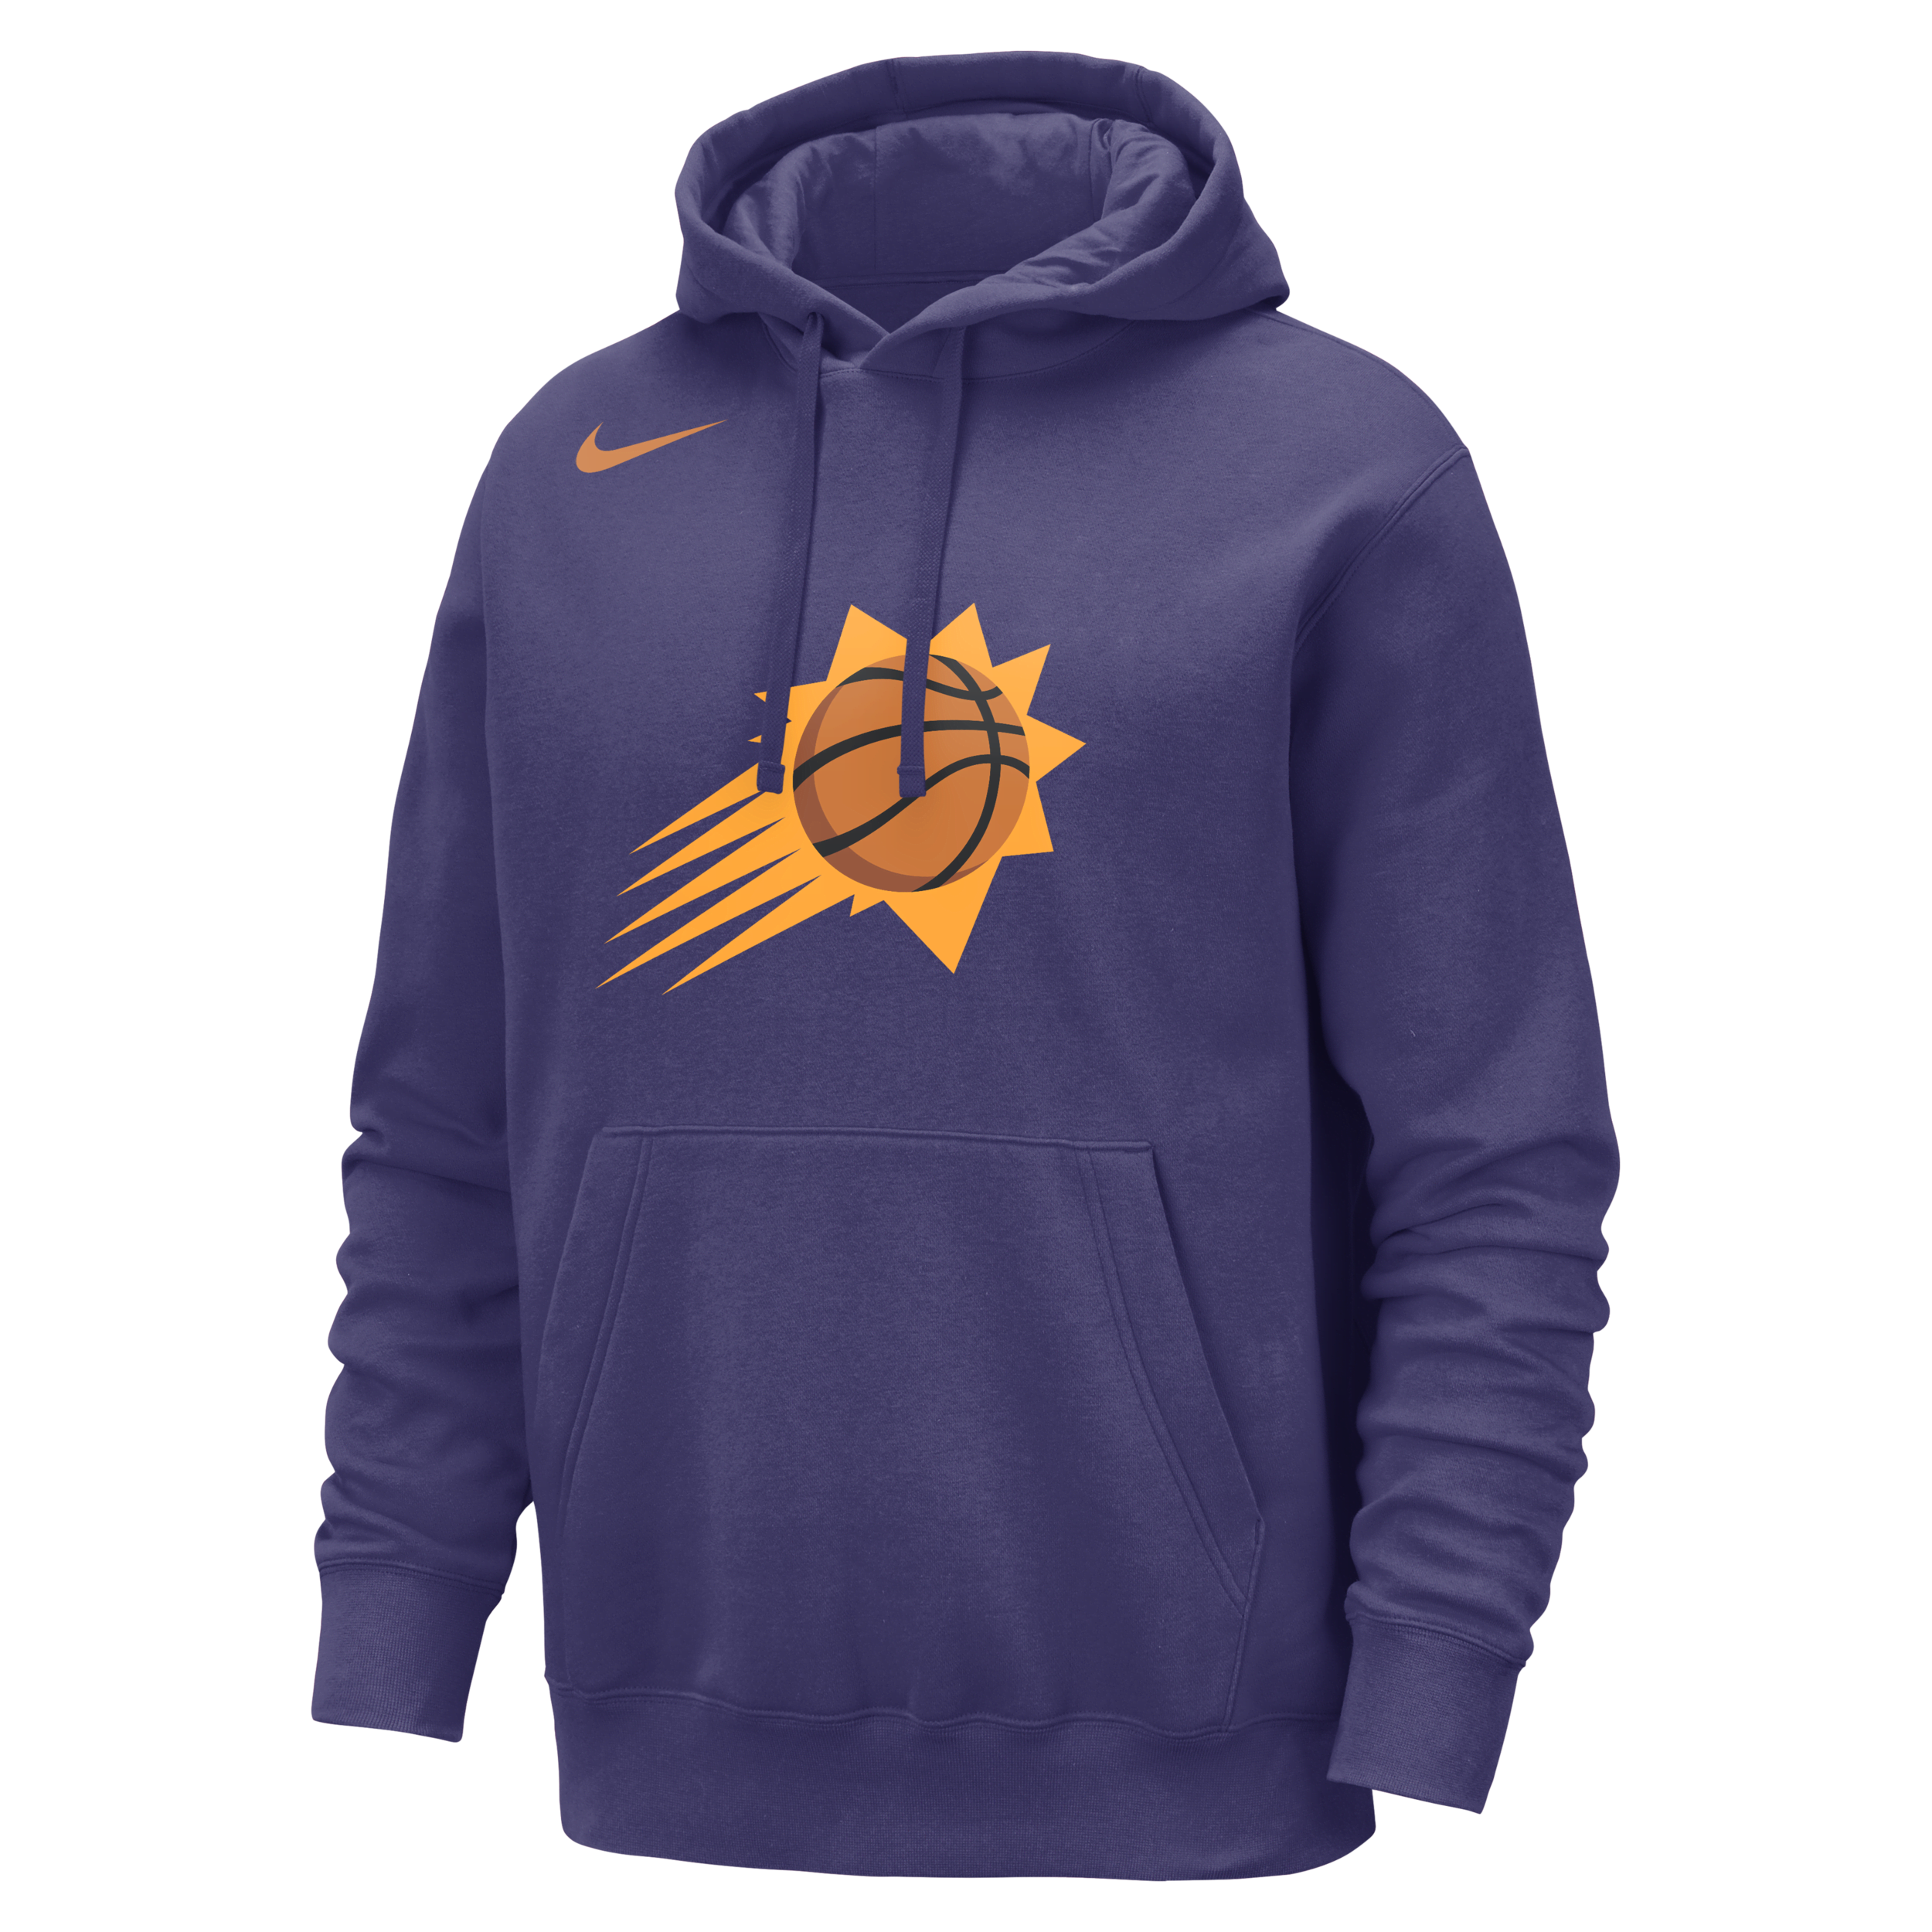 Phoenix Suns Club Sudadera con capucha Nike de la NBA - Hombre - Morado